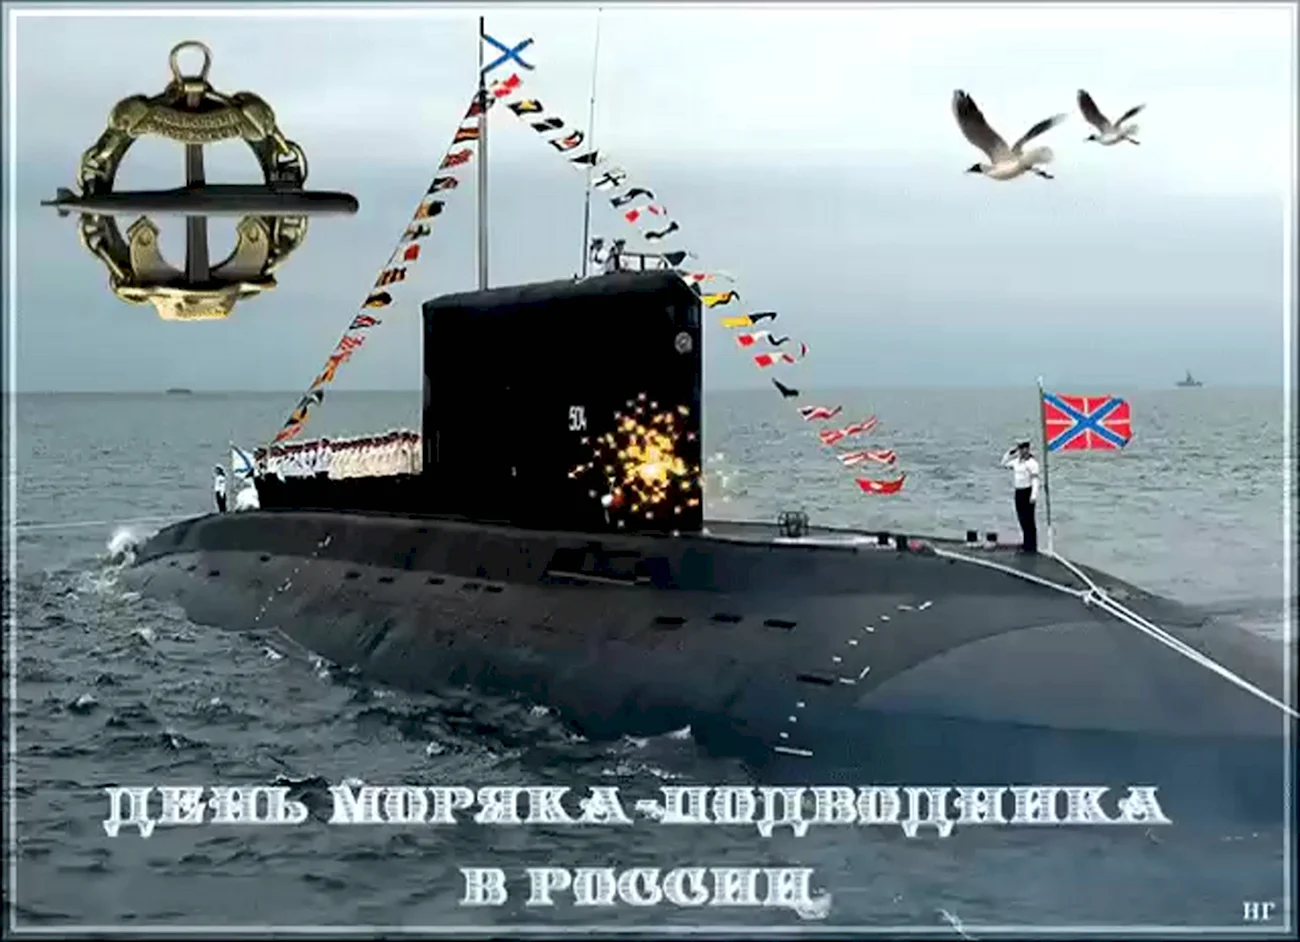 ВМФ России день моряка подводника. Поздравление